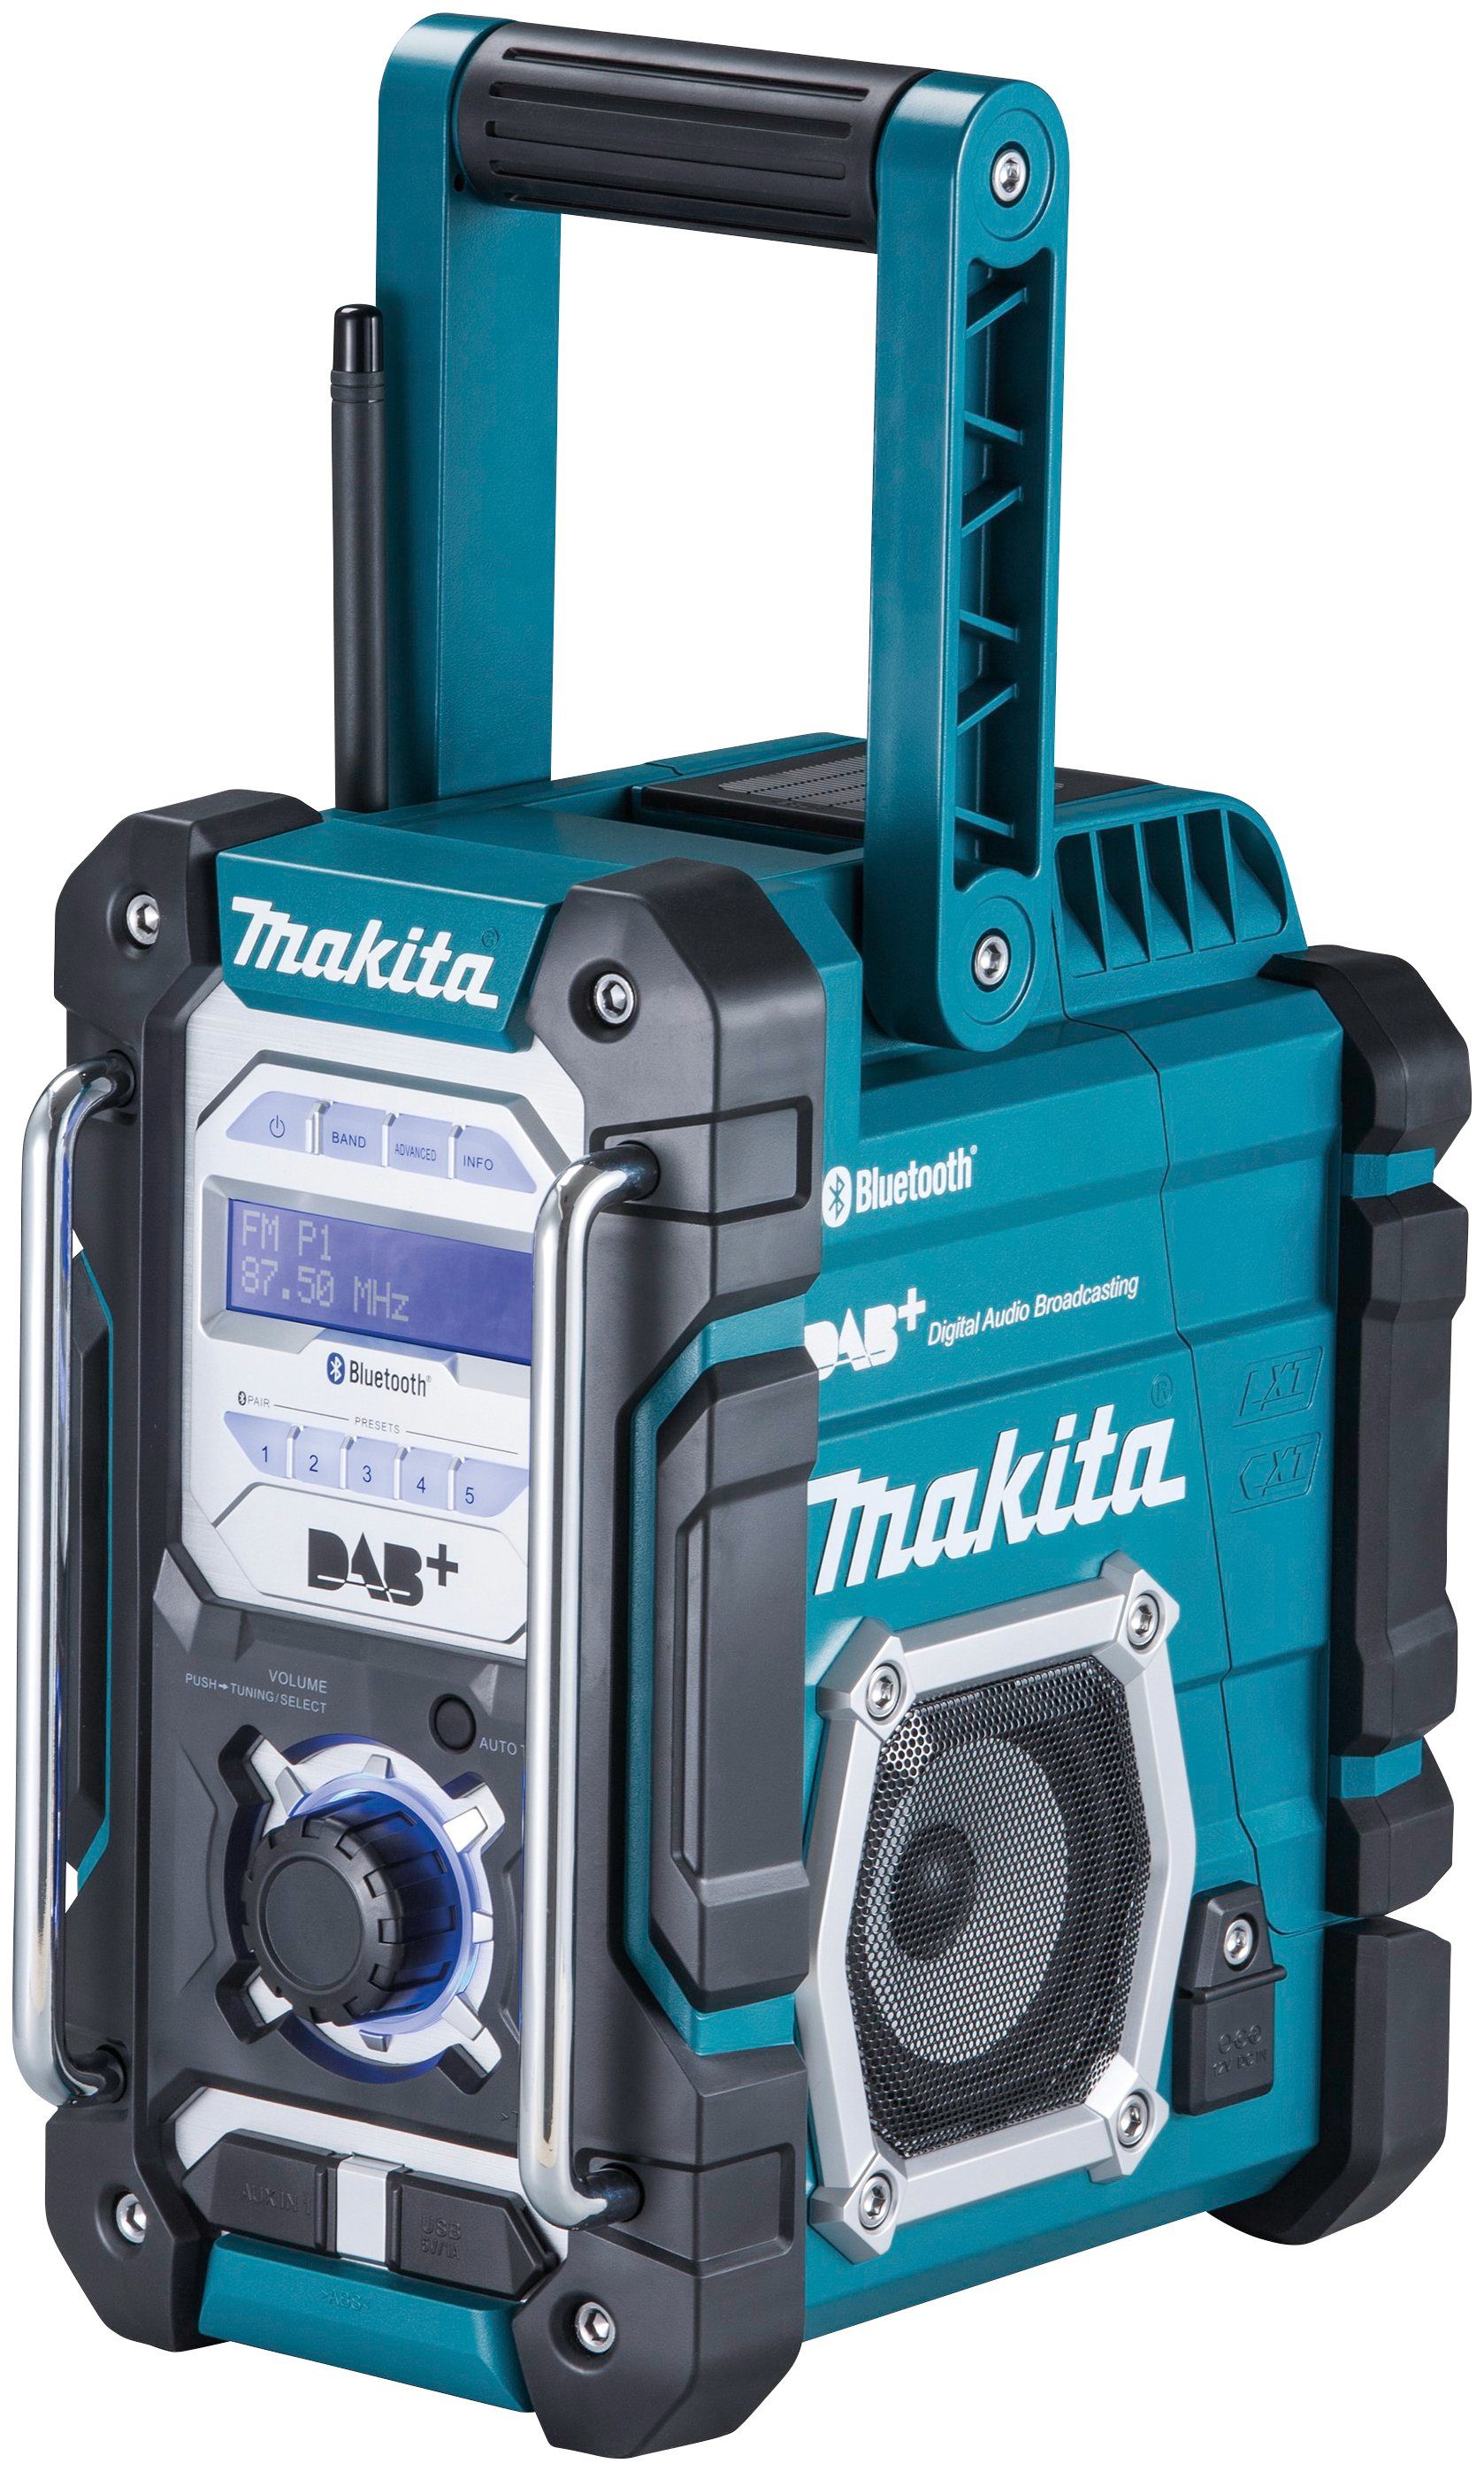 Makita (DAB), Baustellenradio FM-Tuner, ohne DMR112 Akku) (Digitalradio